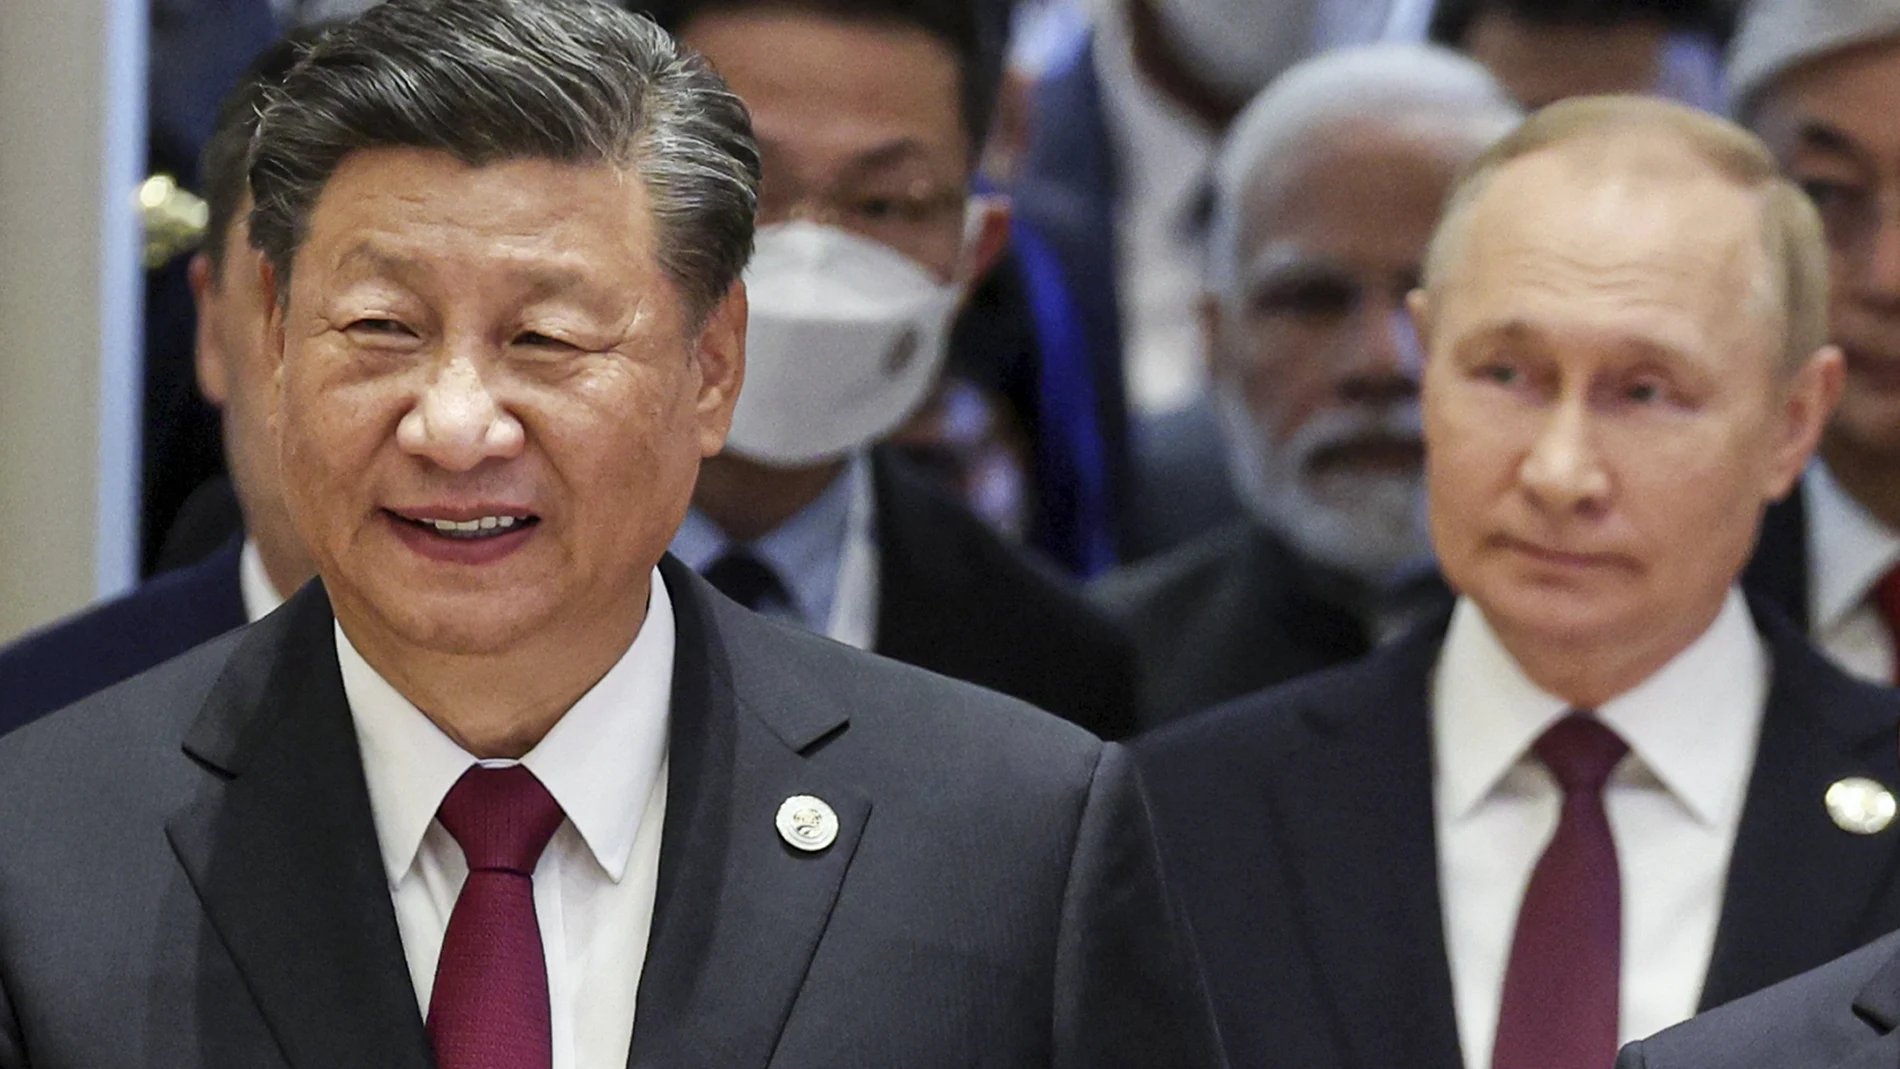 Xi Jinping y Vladimir Putin, en la cumbre de la Organización para la Cooperación de Shanghai el pasado viernes